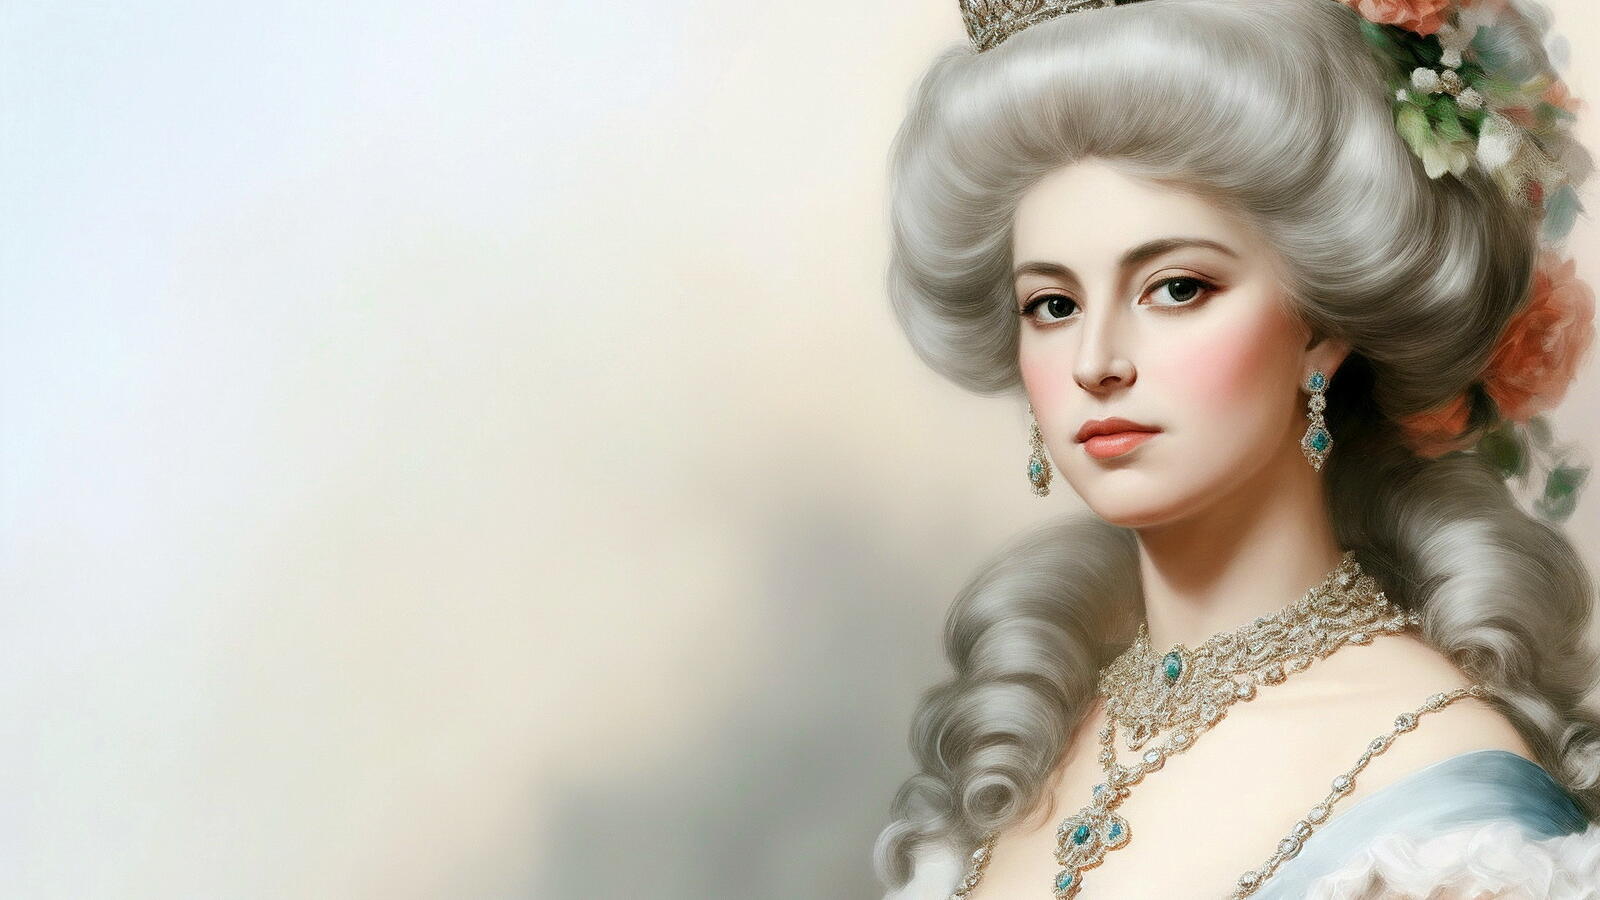 Бесплатное фото Портрет королевы на светлом фоне